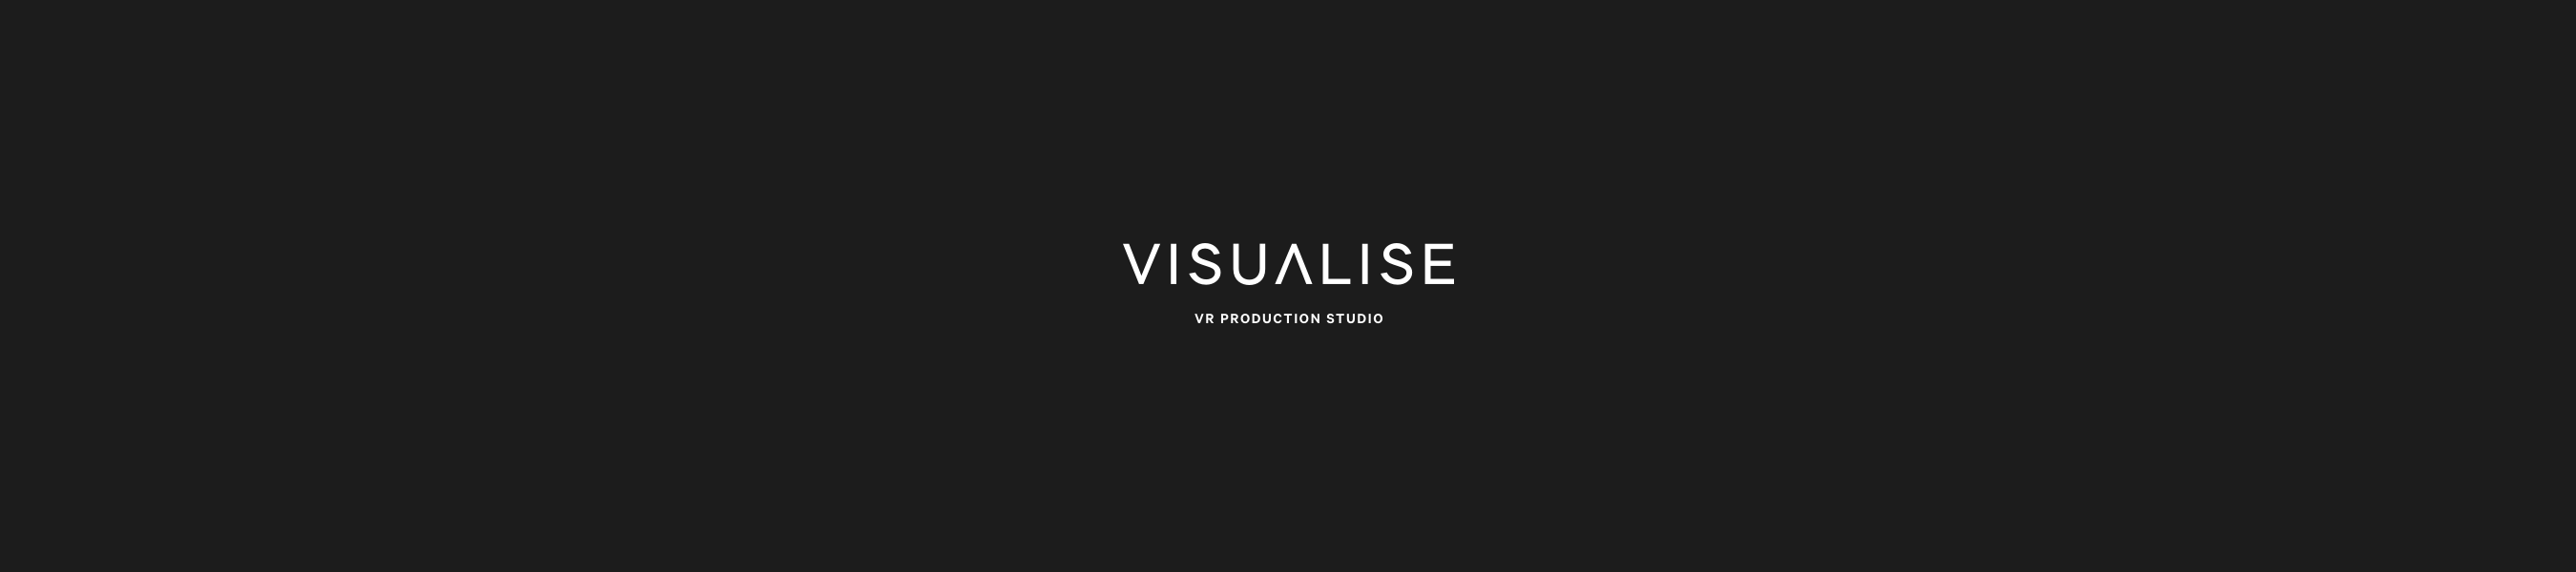 Visualise_Web